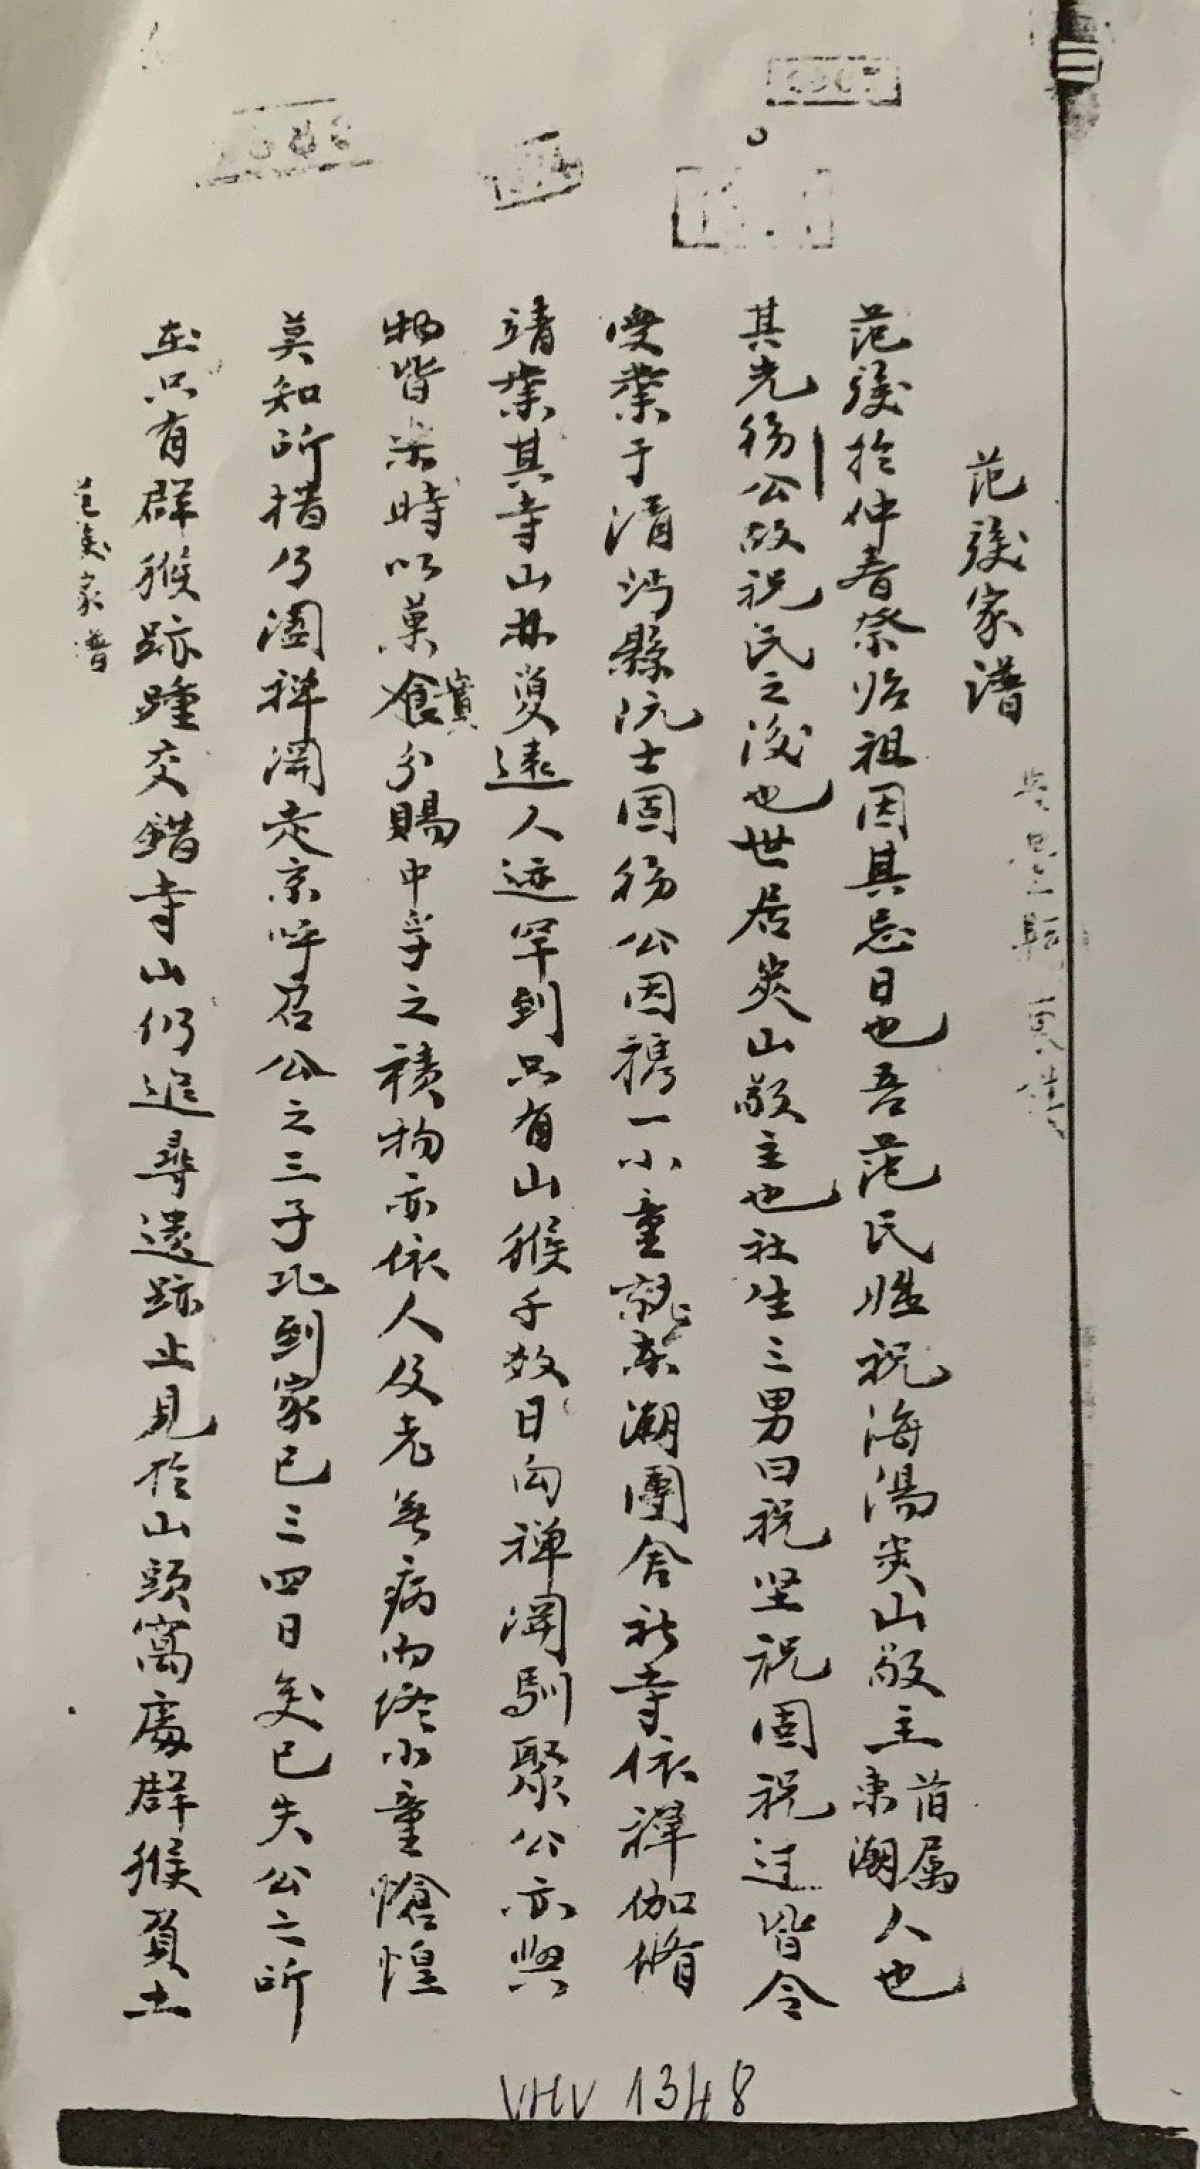 Lời tựa của cuốn gia phả "Nghiêm tính gia kê" do Hoàng giáp Nghiêm Ích Khiêm biên soạn năm 1498. Ảnh do Viện Nghiên cứu Hán Nôm cung cấp.